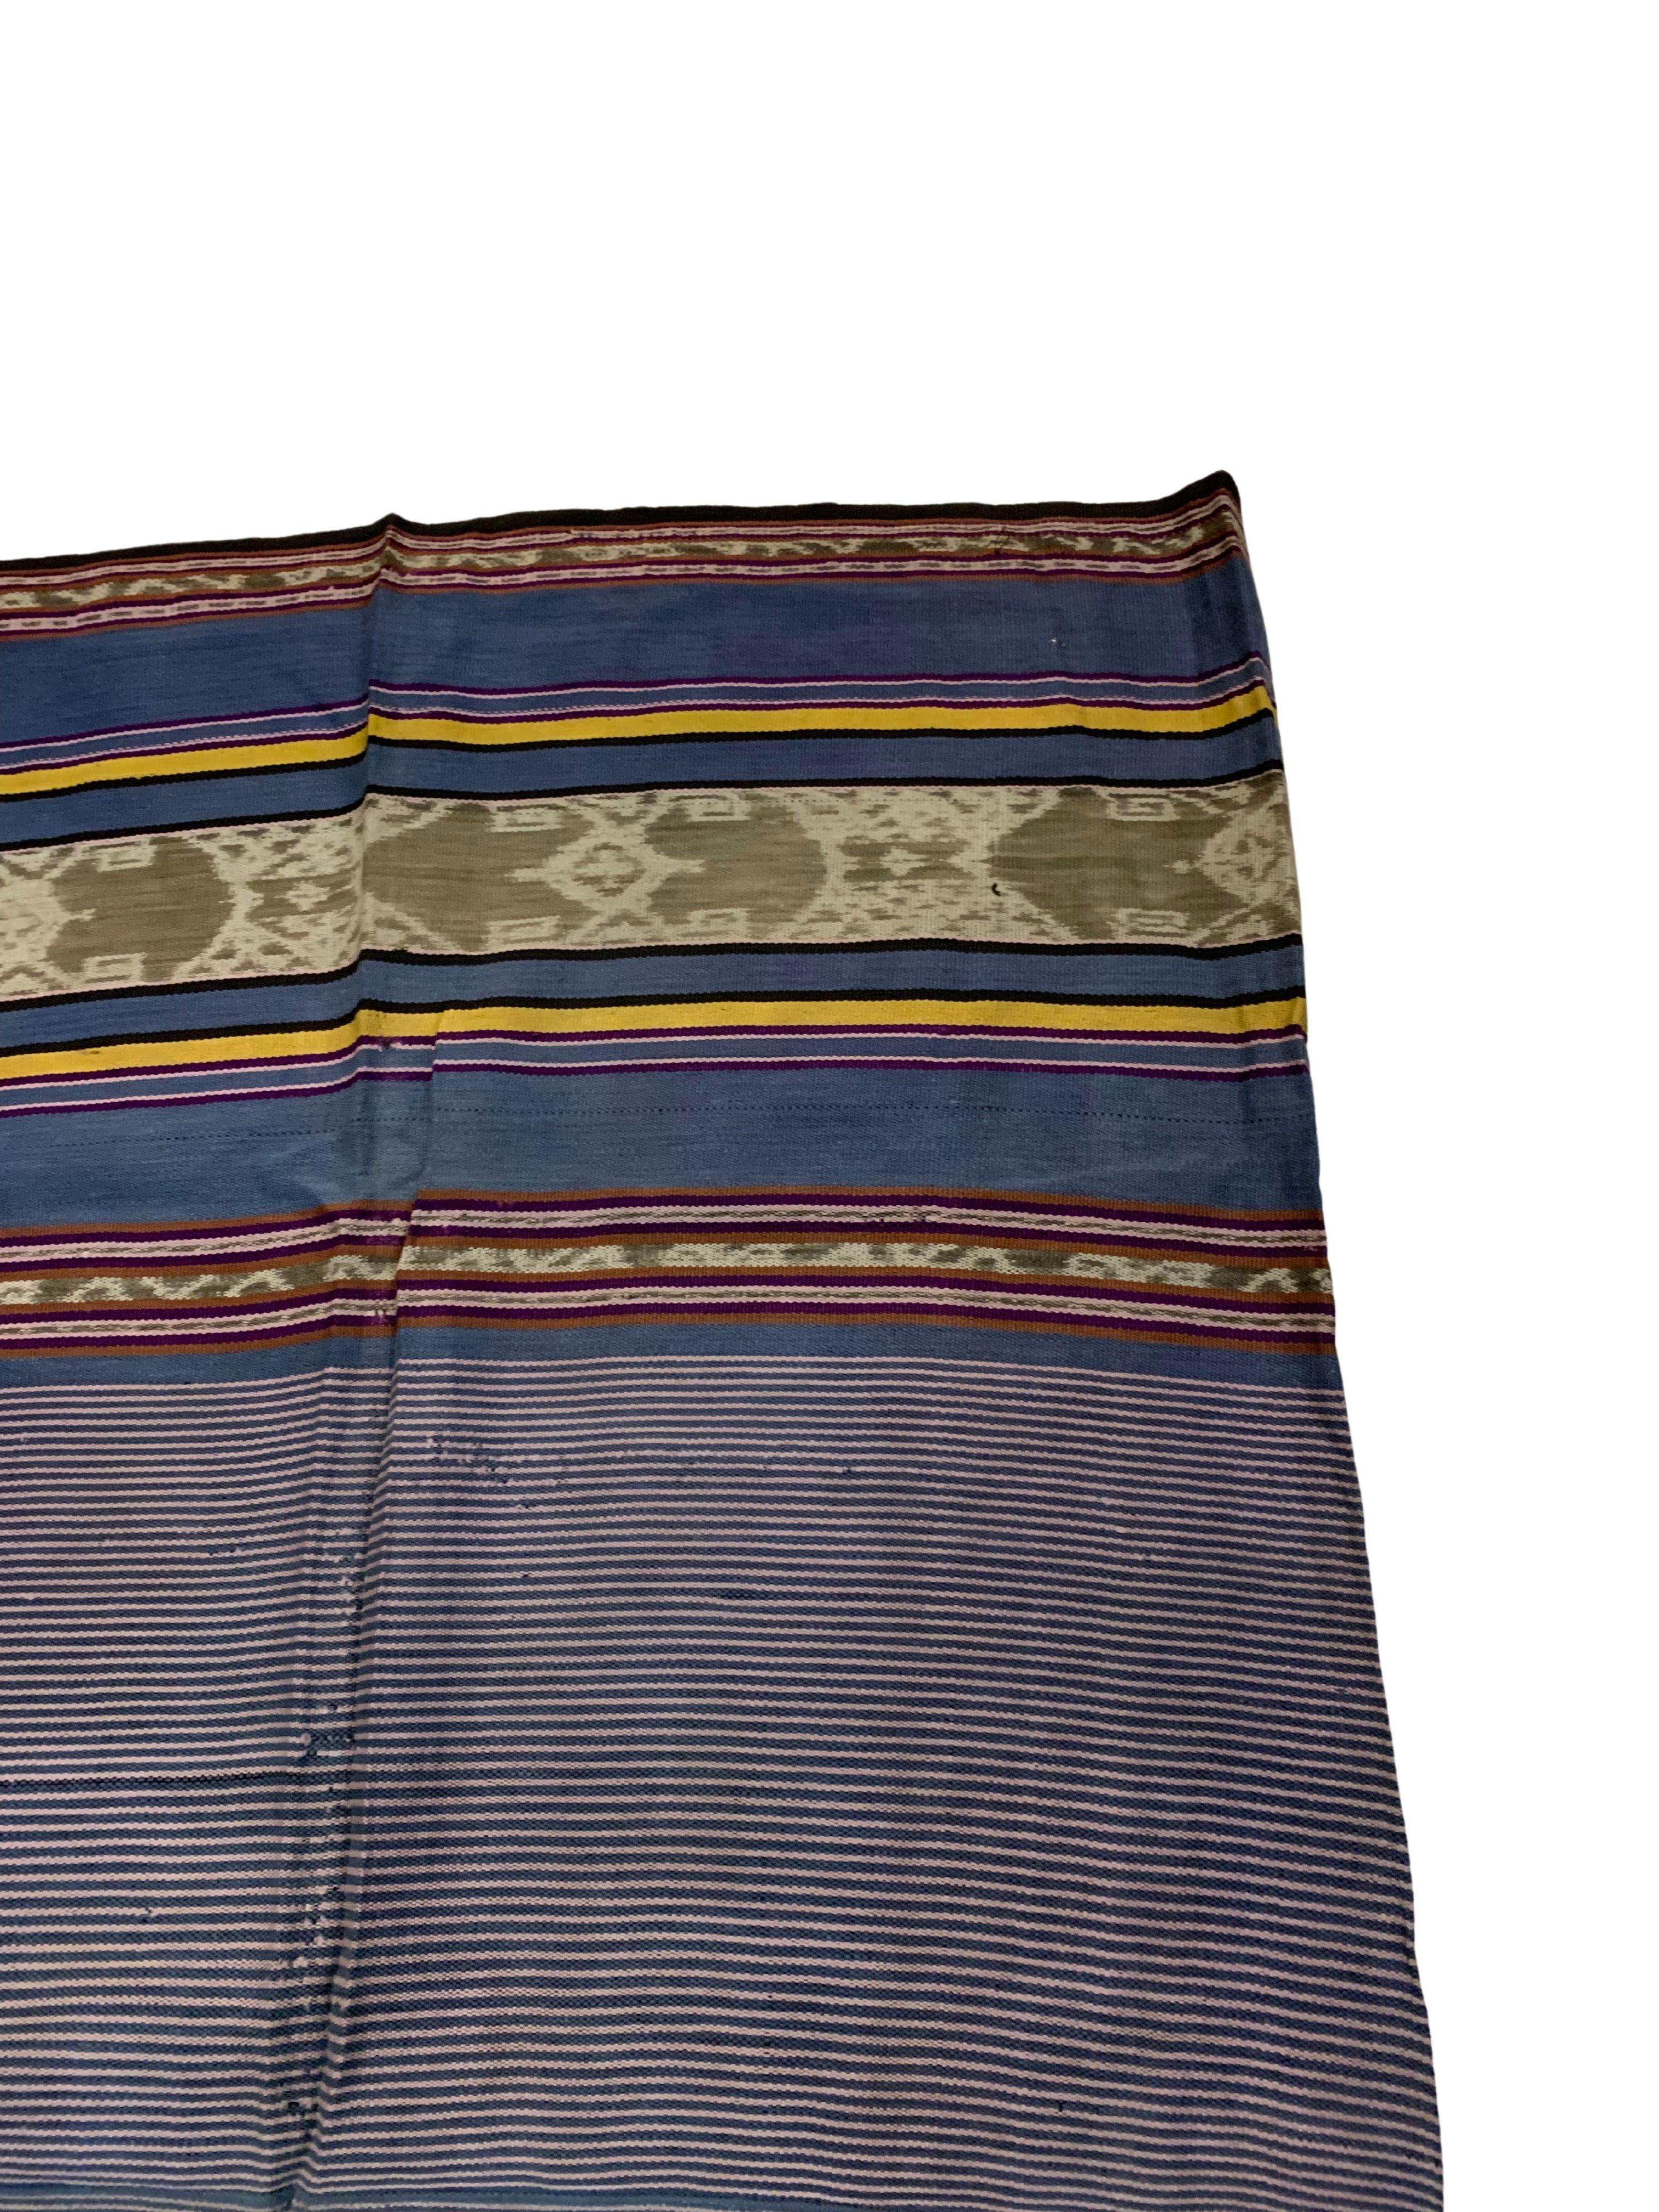 Ikat-Textil von Timor-Insel mit atemberaubendem naturfarbenem Farbstoff, Indonesien (Indonesisch) im Angebot